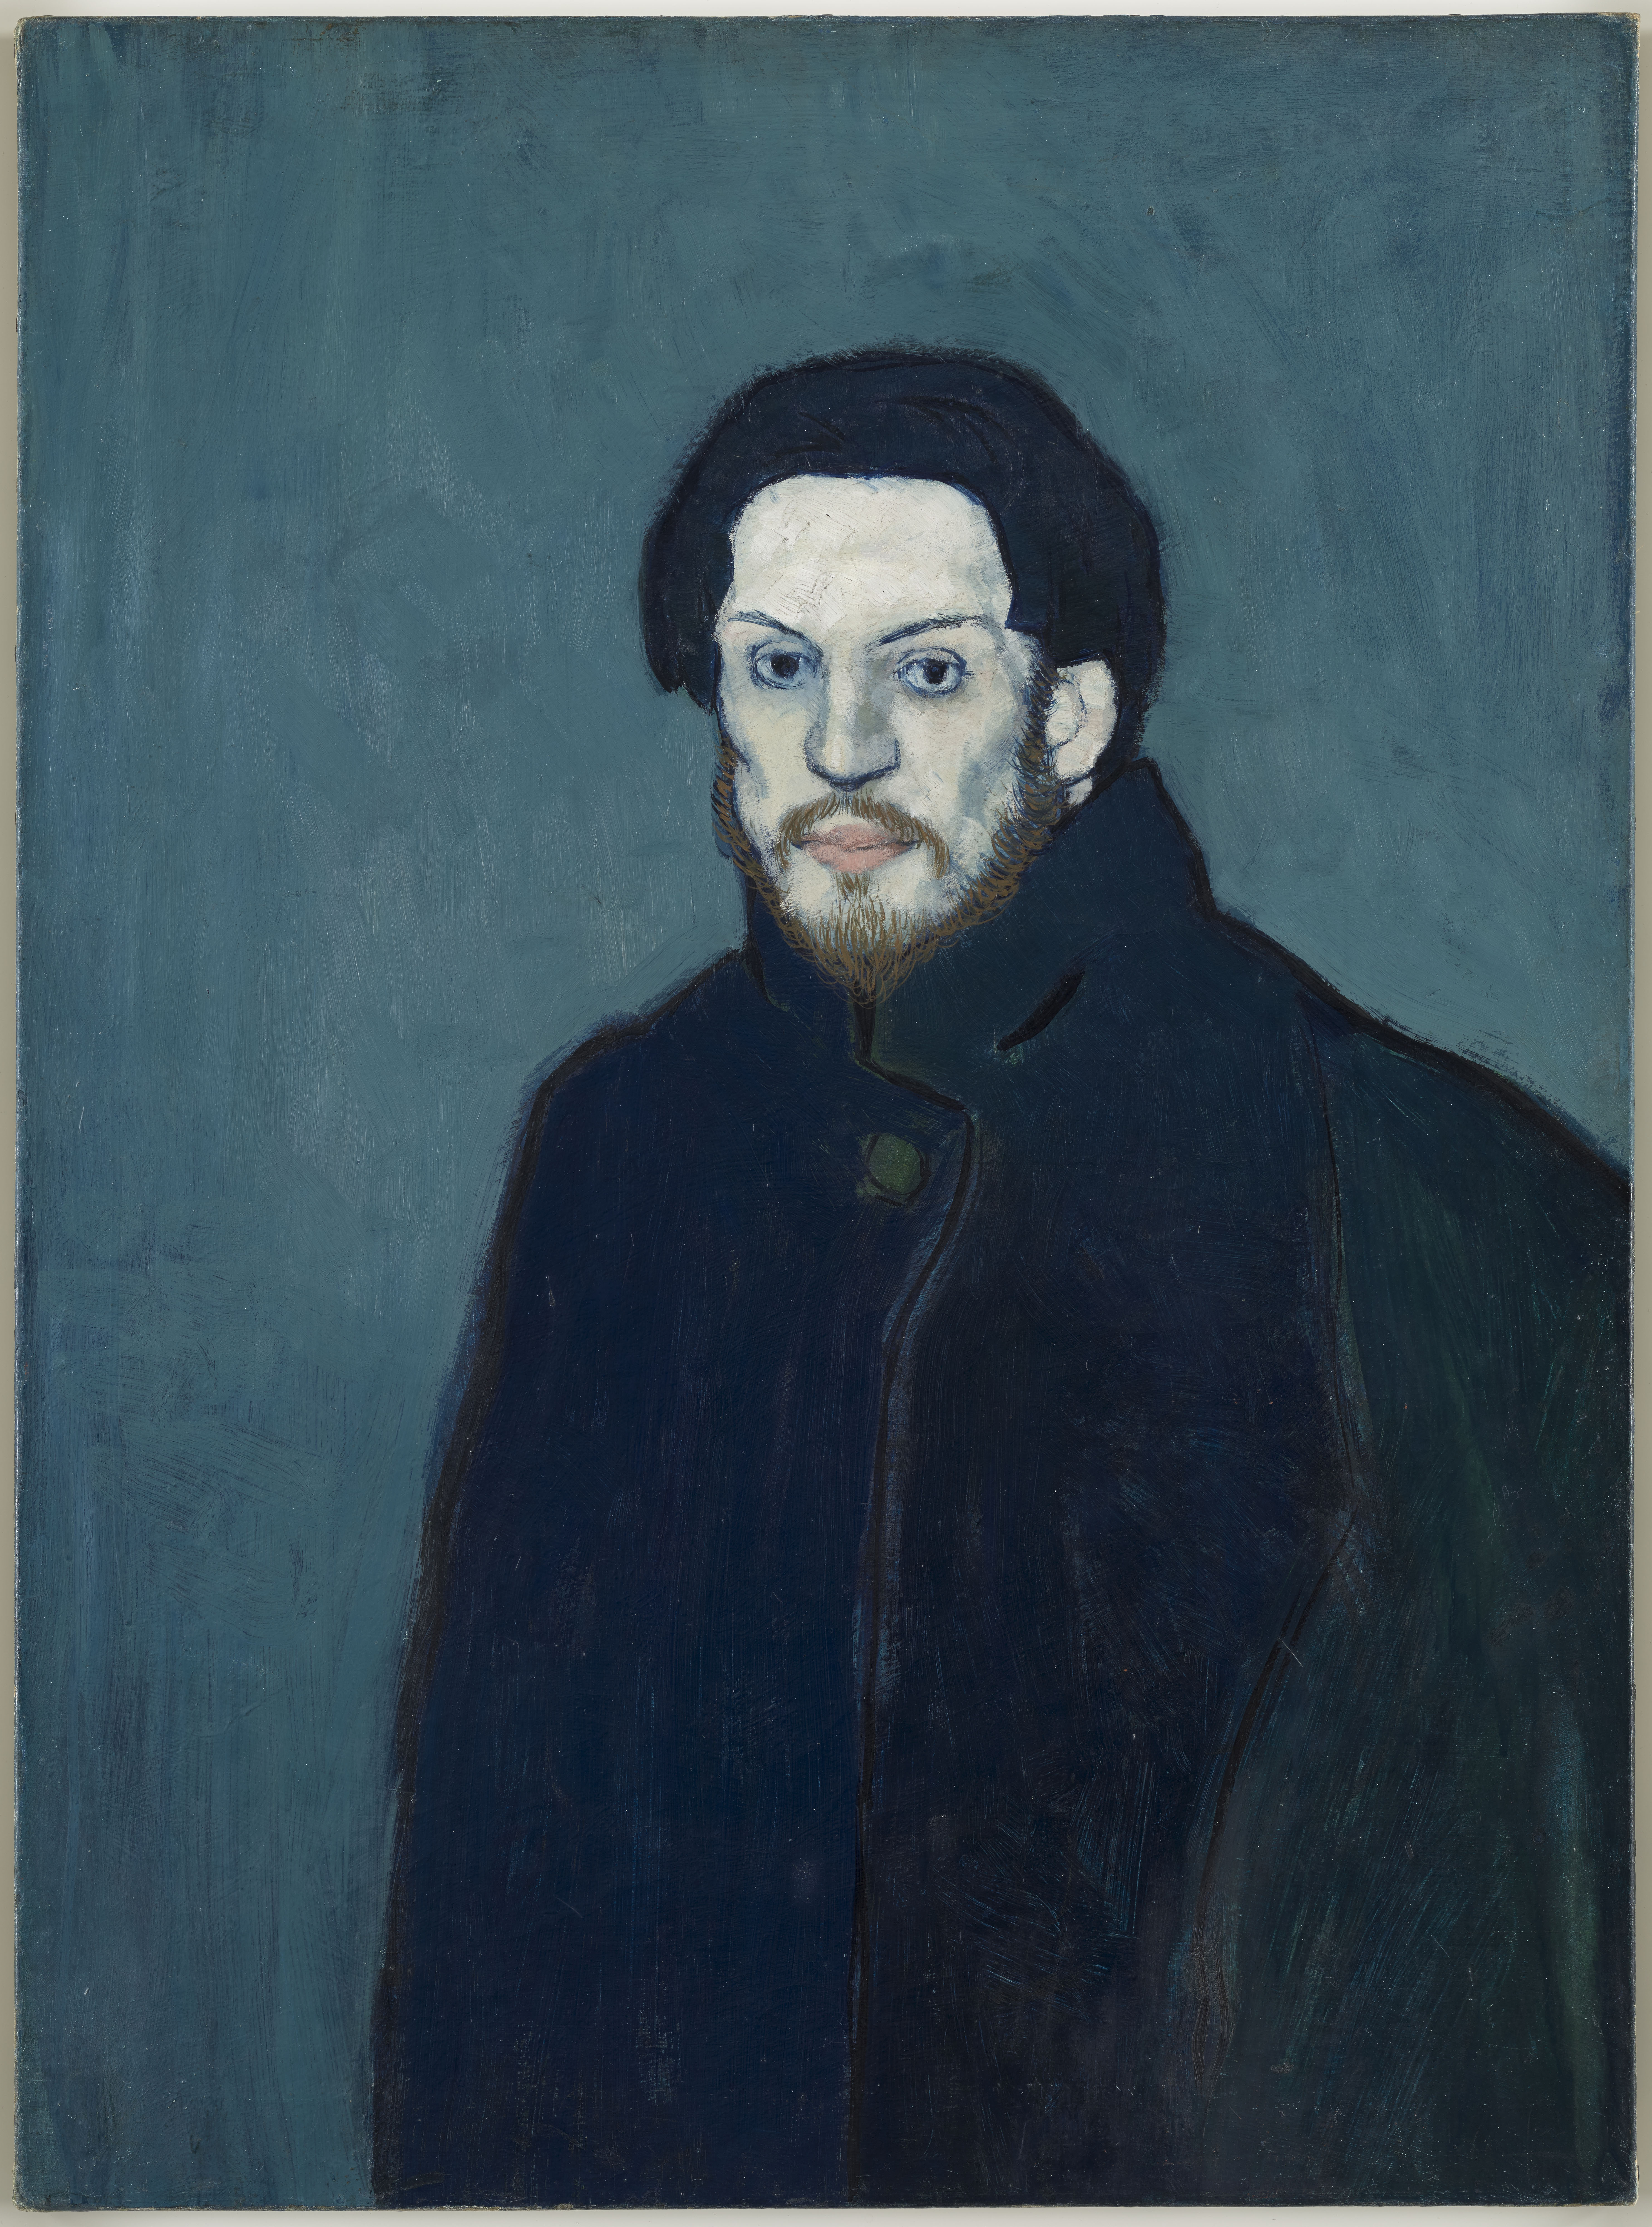 《自画像》，巴黎，1901年末，布面油画，81X60cm，国立巴黎毕加索博物馆， 版权声明 Succession Picasso 2019